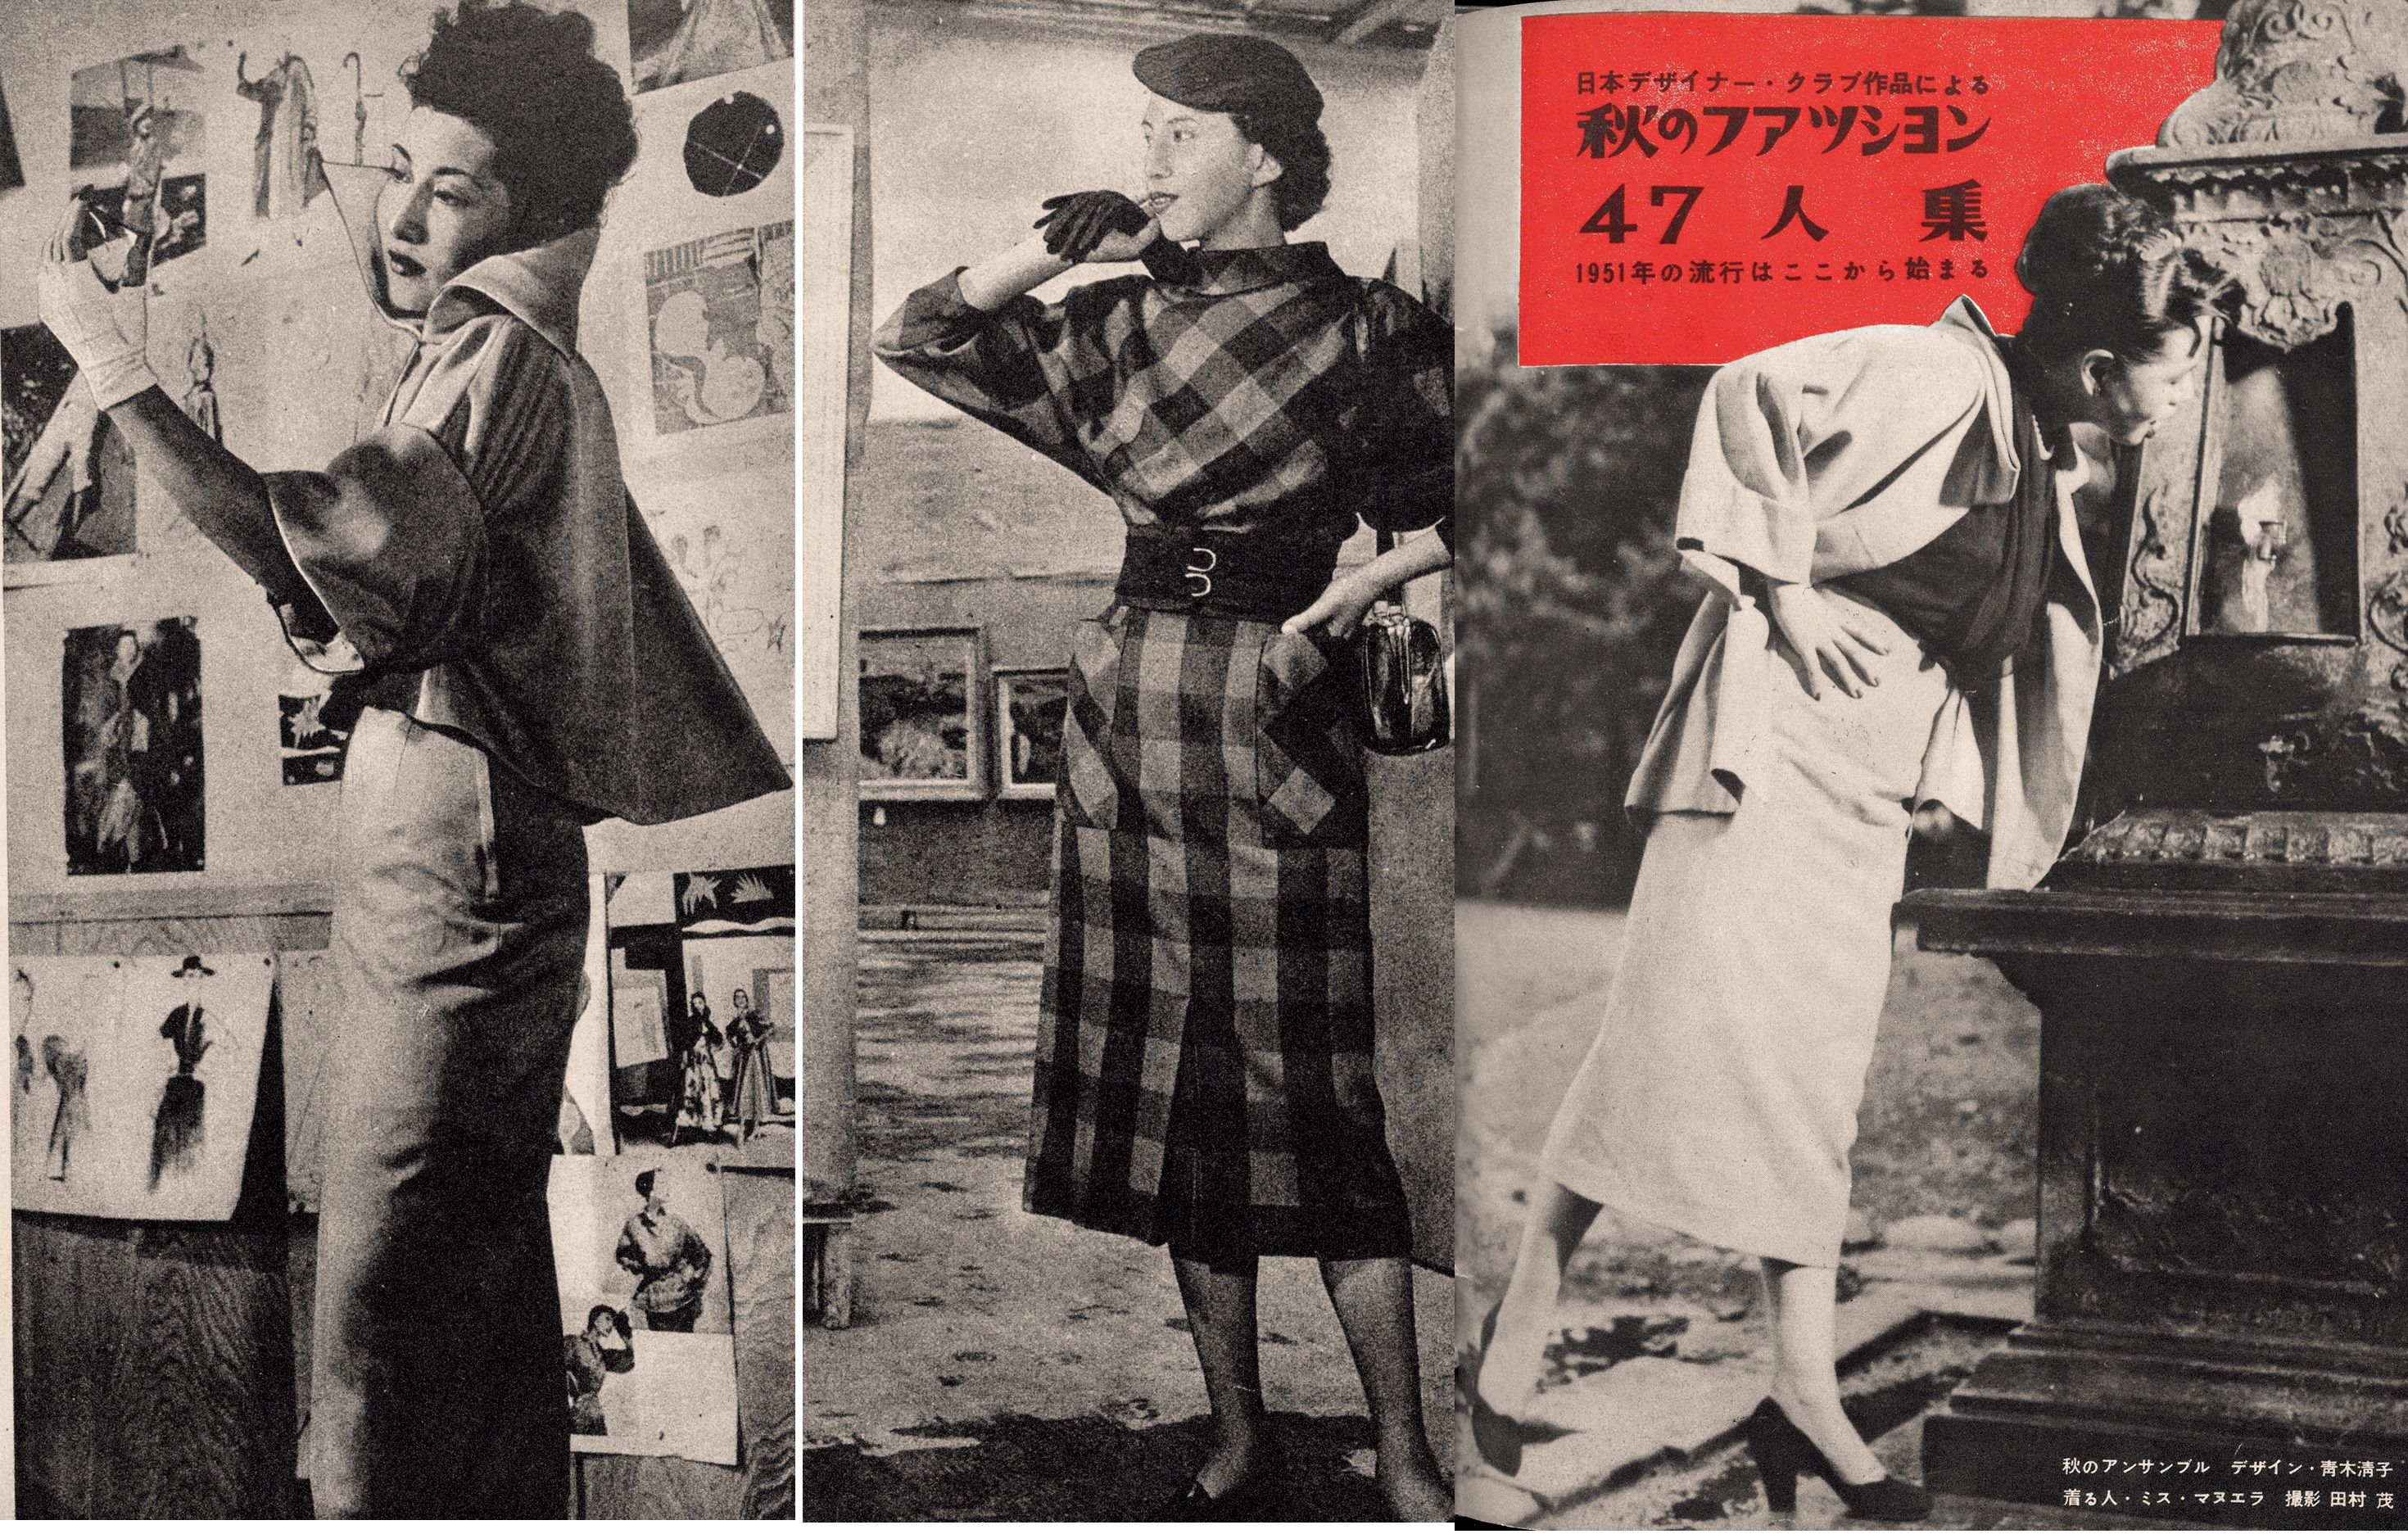 婦人画報 のファッション From 1940 To 1970s 戦後の女性たちのおしゃれを追いかけた貴重な記録